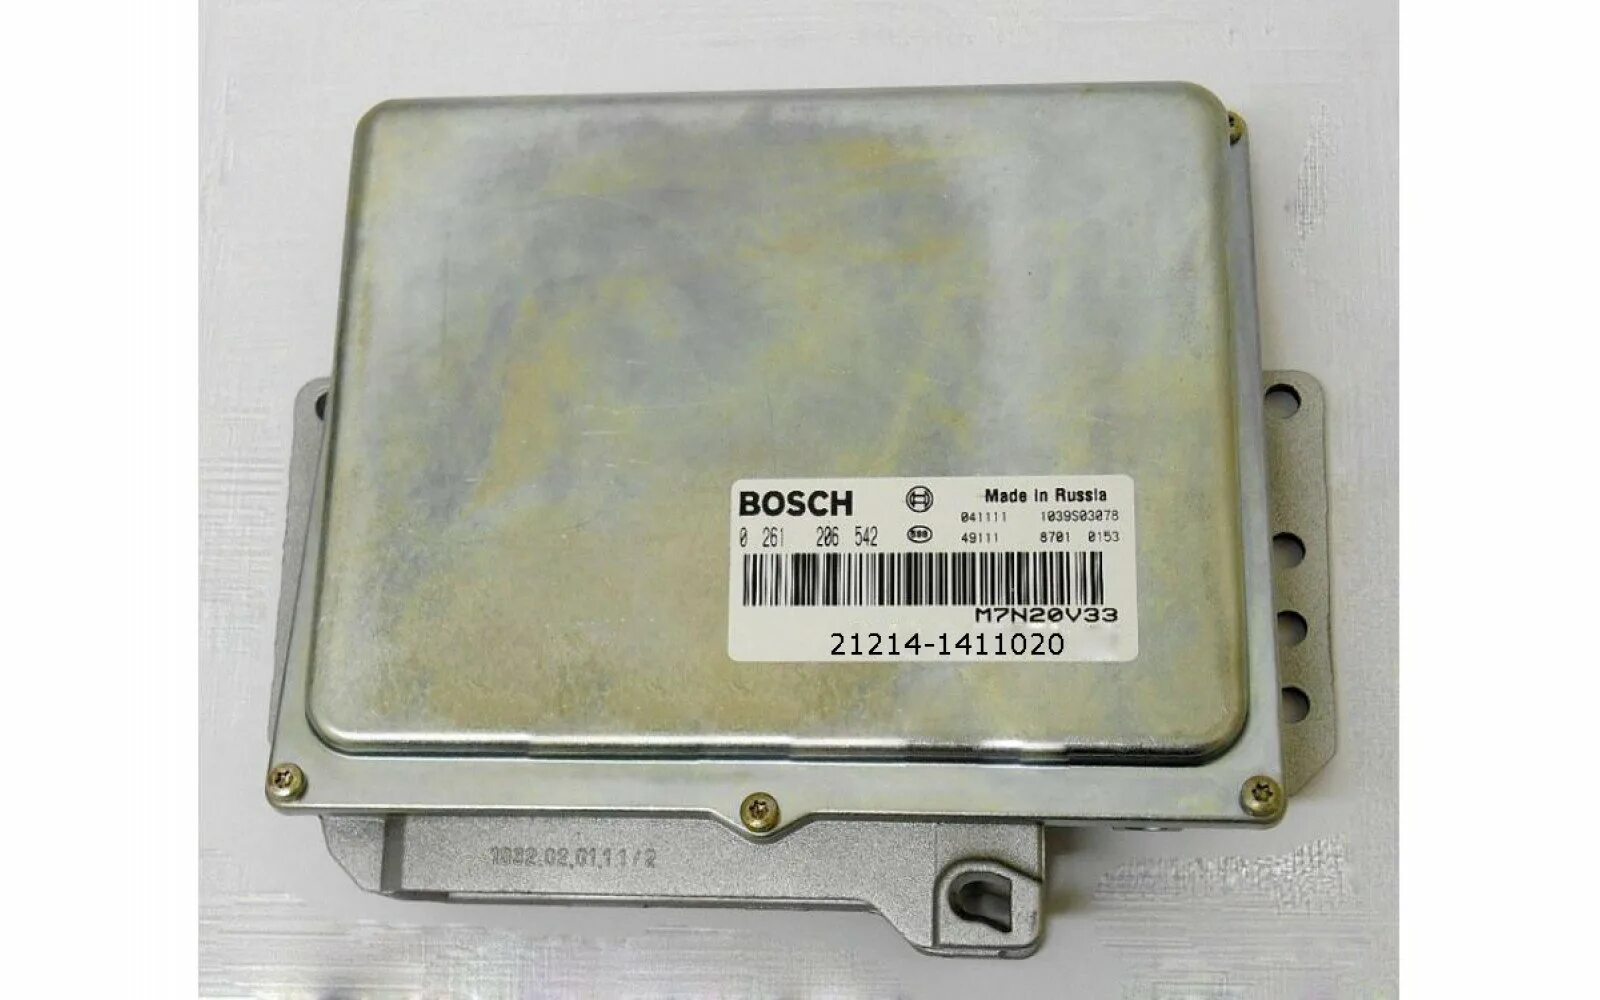 Bosch 2123. Контроллер 2123-1411020-50 (Bosch). ЭБУ бош 2111-1411020. Контроллер ВАЗ-21230-1411020-50. Bosch 21214 1411020.